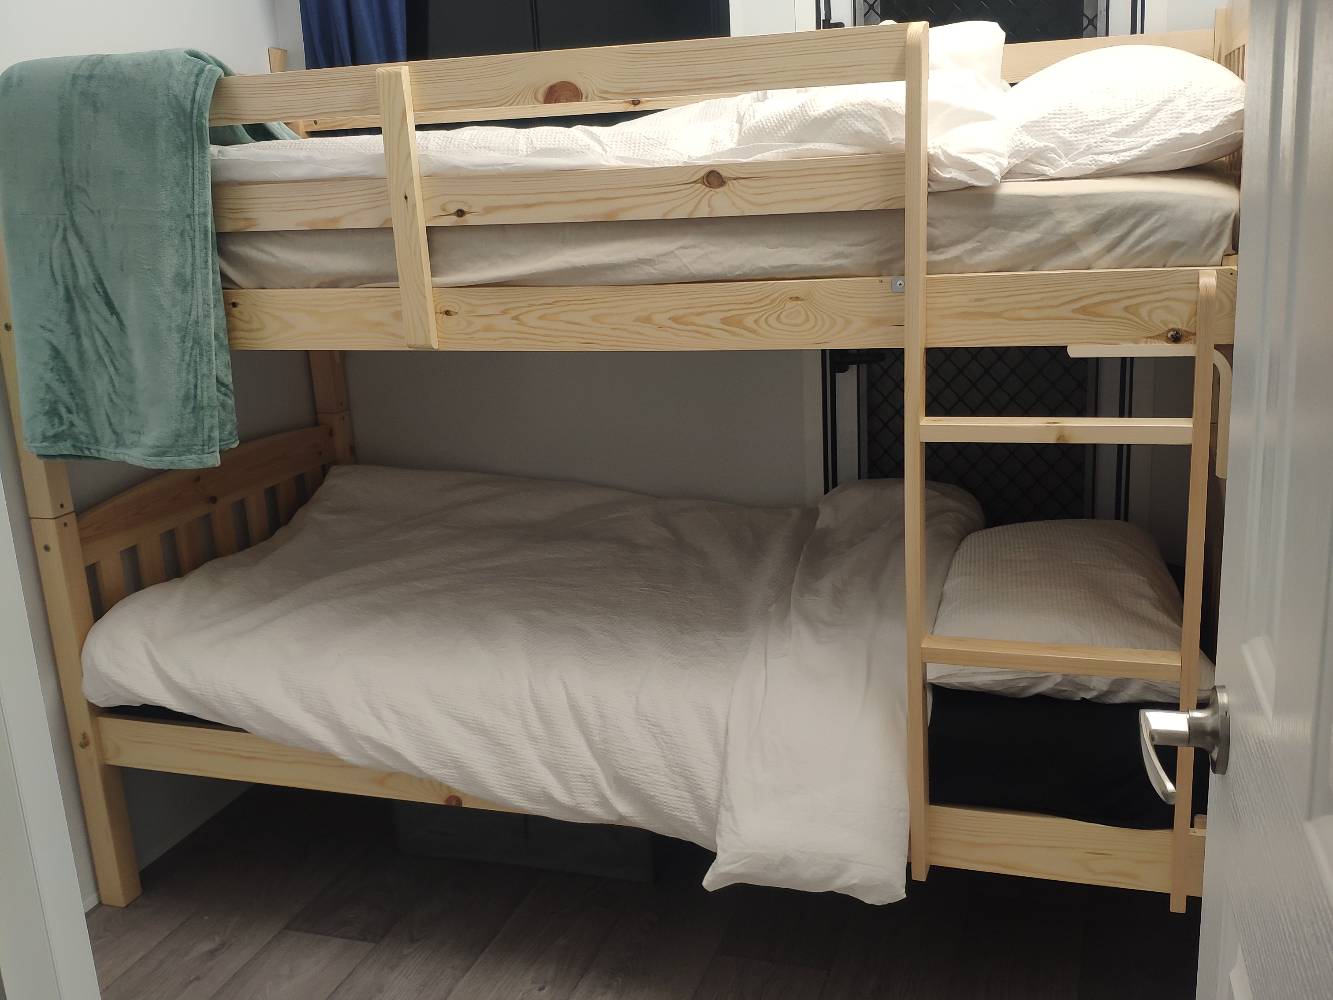 Bedroom2 heavy duty bunk beds